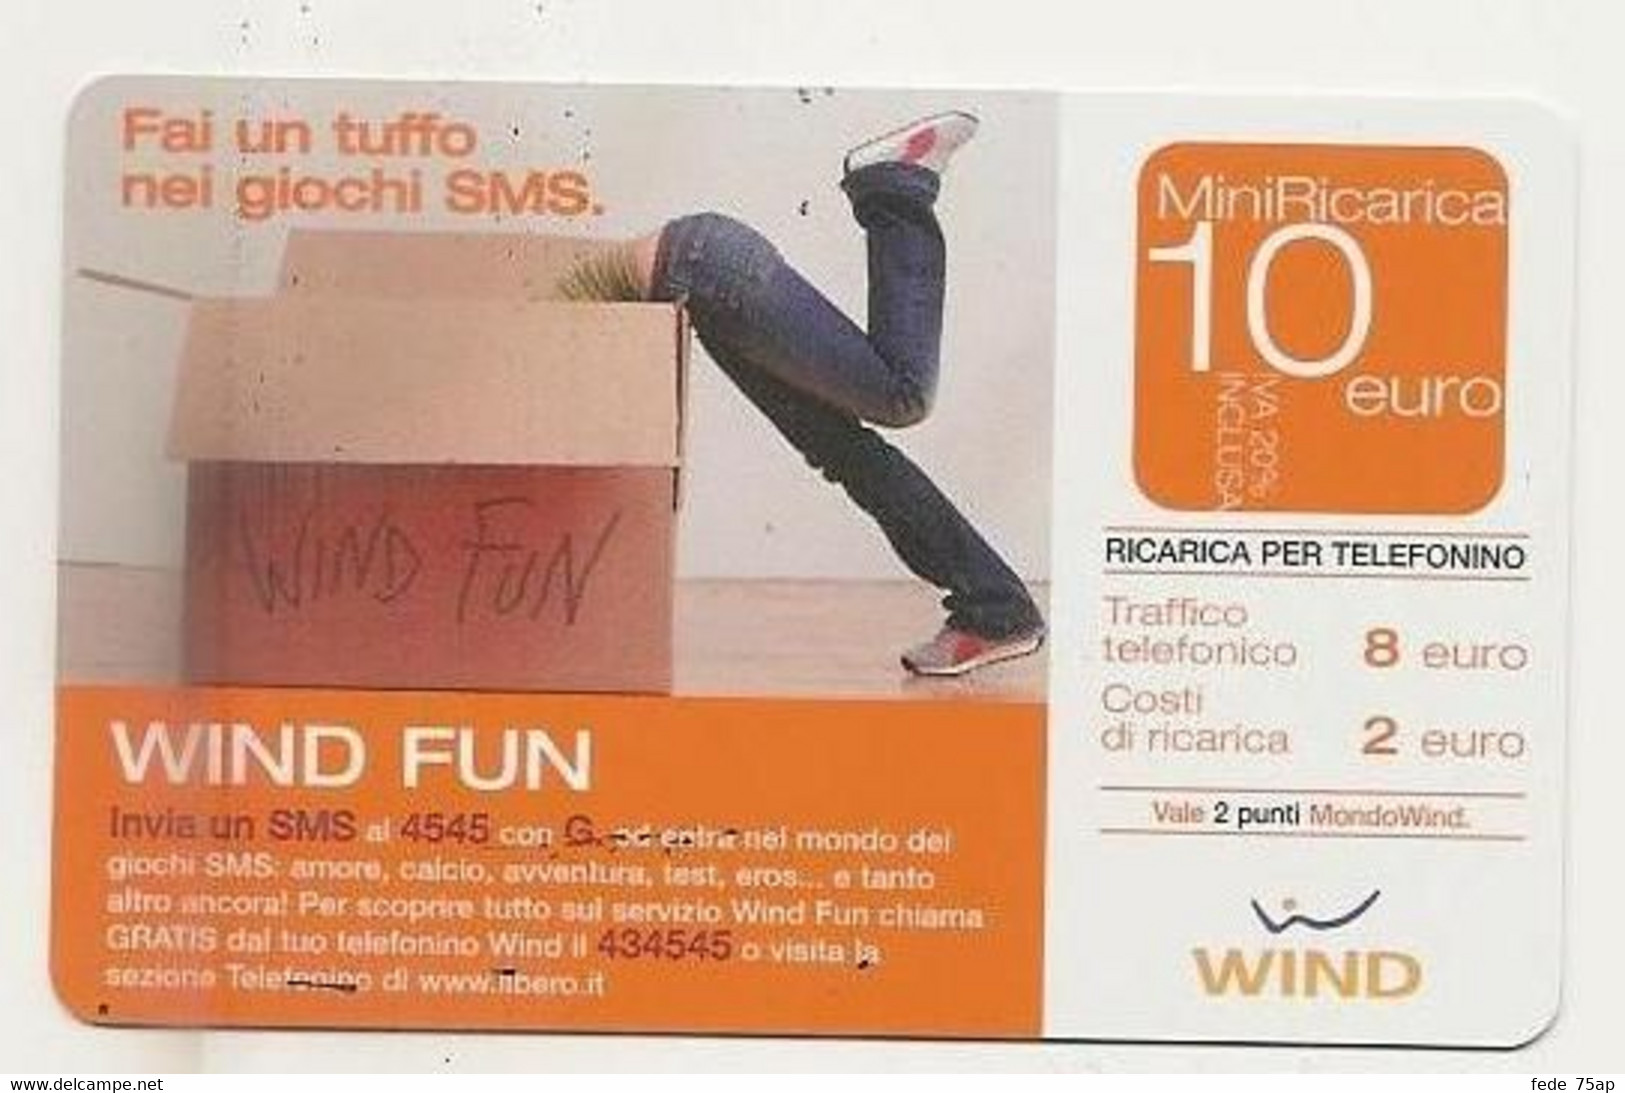 Ricarica WIND Fai Un Tuffo Nei Giochi SMS, Wind Fun, Taglio 10,00 Euro, Scadenza 30/06/2007, VALE 2 PUNTI.... Usata - [2] Sim Cards, Prepaid & Refills